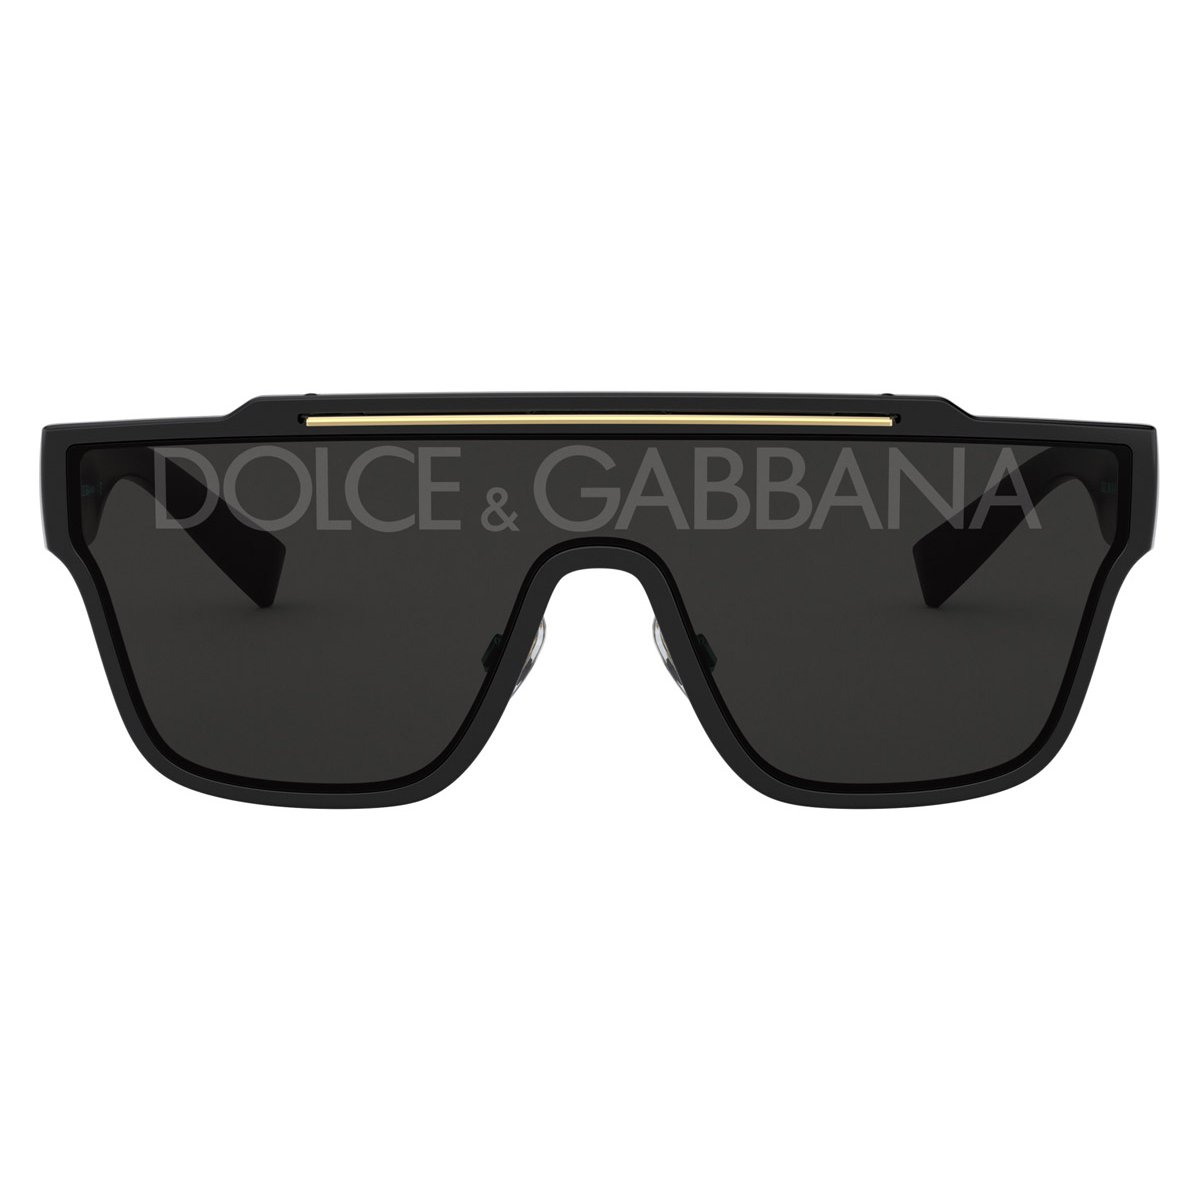 Солнцезащитные очки Dolce & Gabbana Viale Piave 20, черный черные солнцезащитные очки унисекс прямоугольной формы с полными линзами d franklin с зелеными линзами d franklin черный